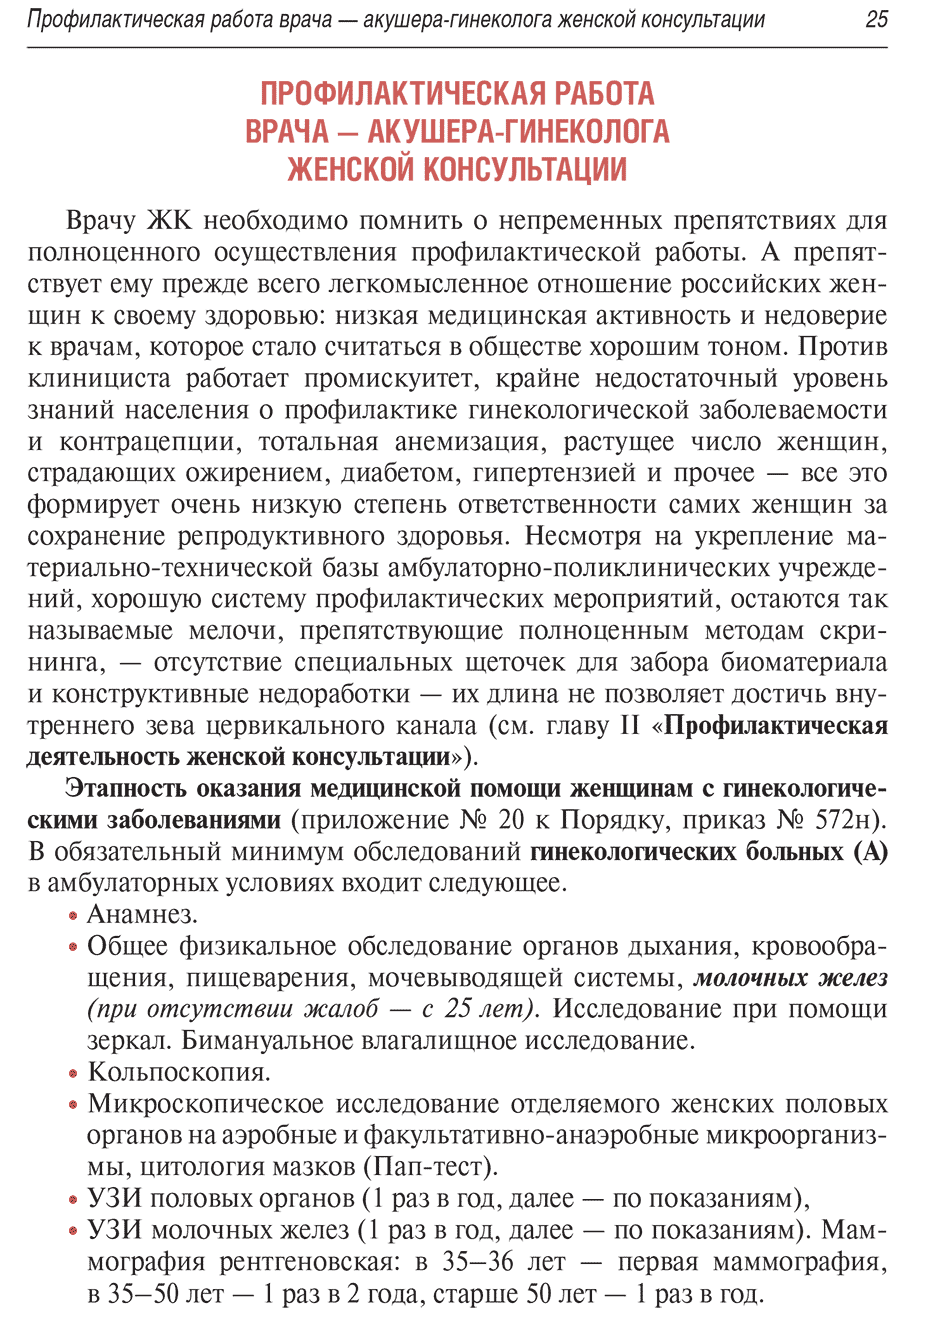 Пример страницы из книги "Женская консультация: руководство" - Радзинский В. Е.